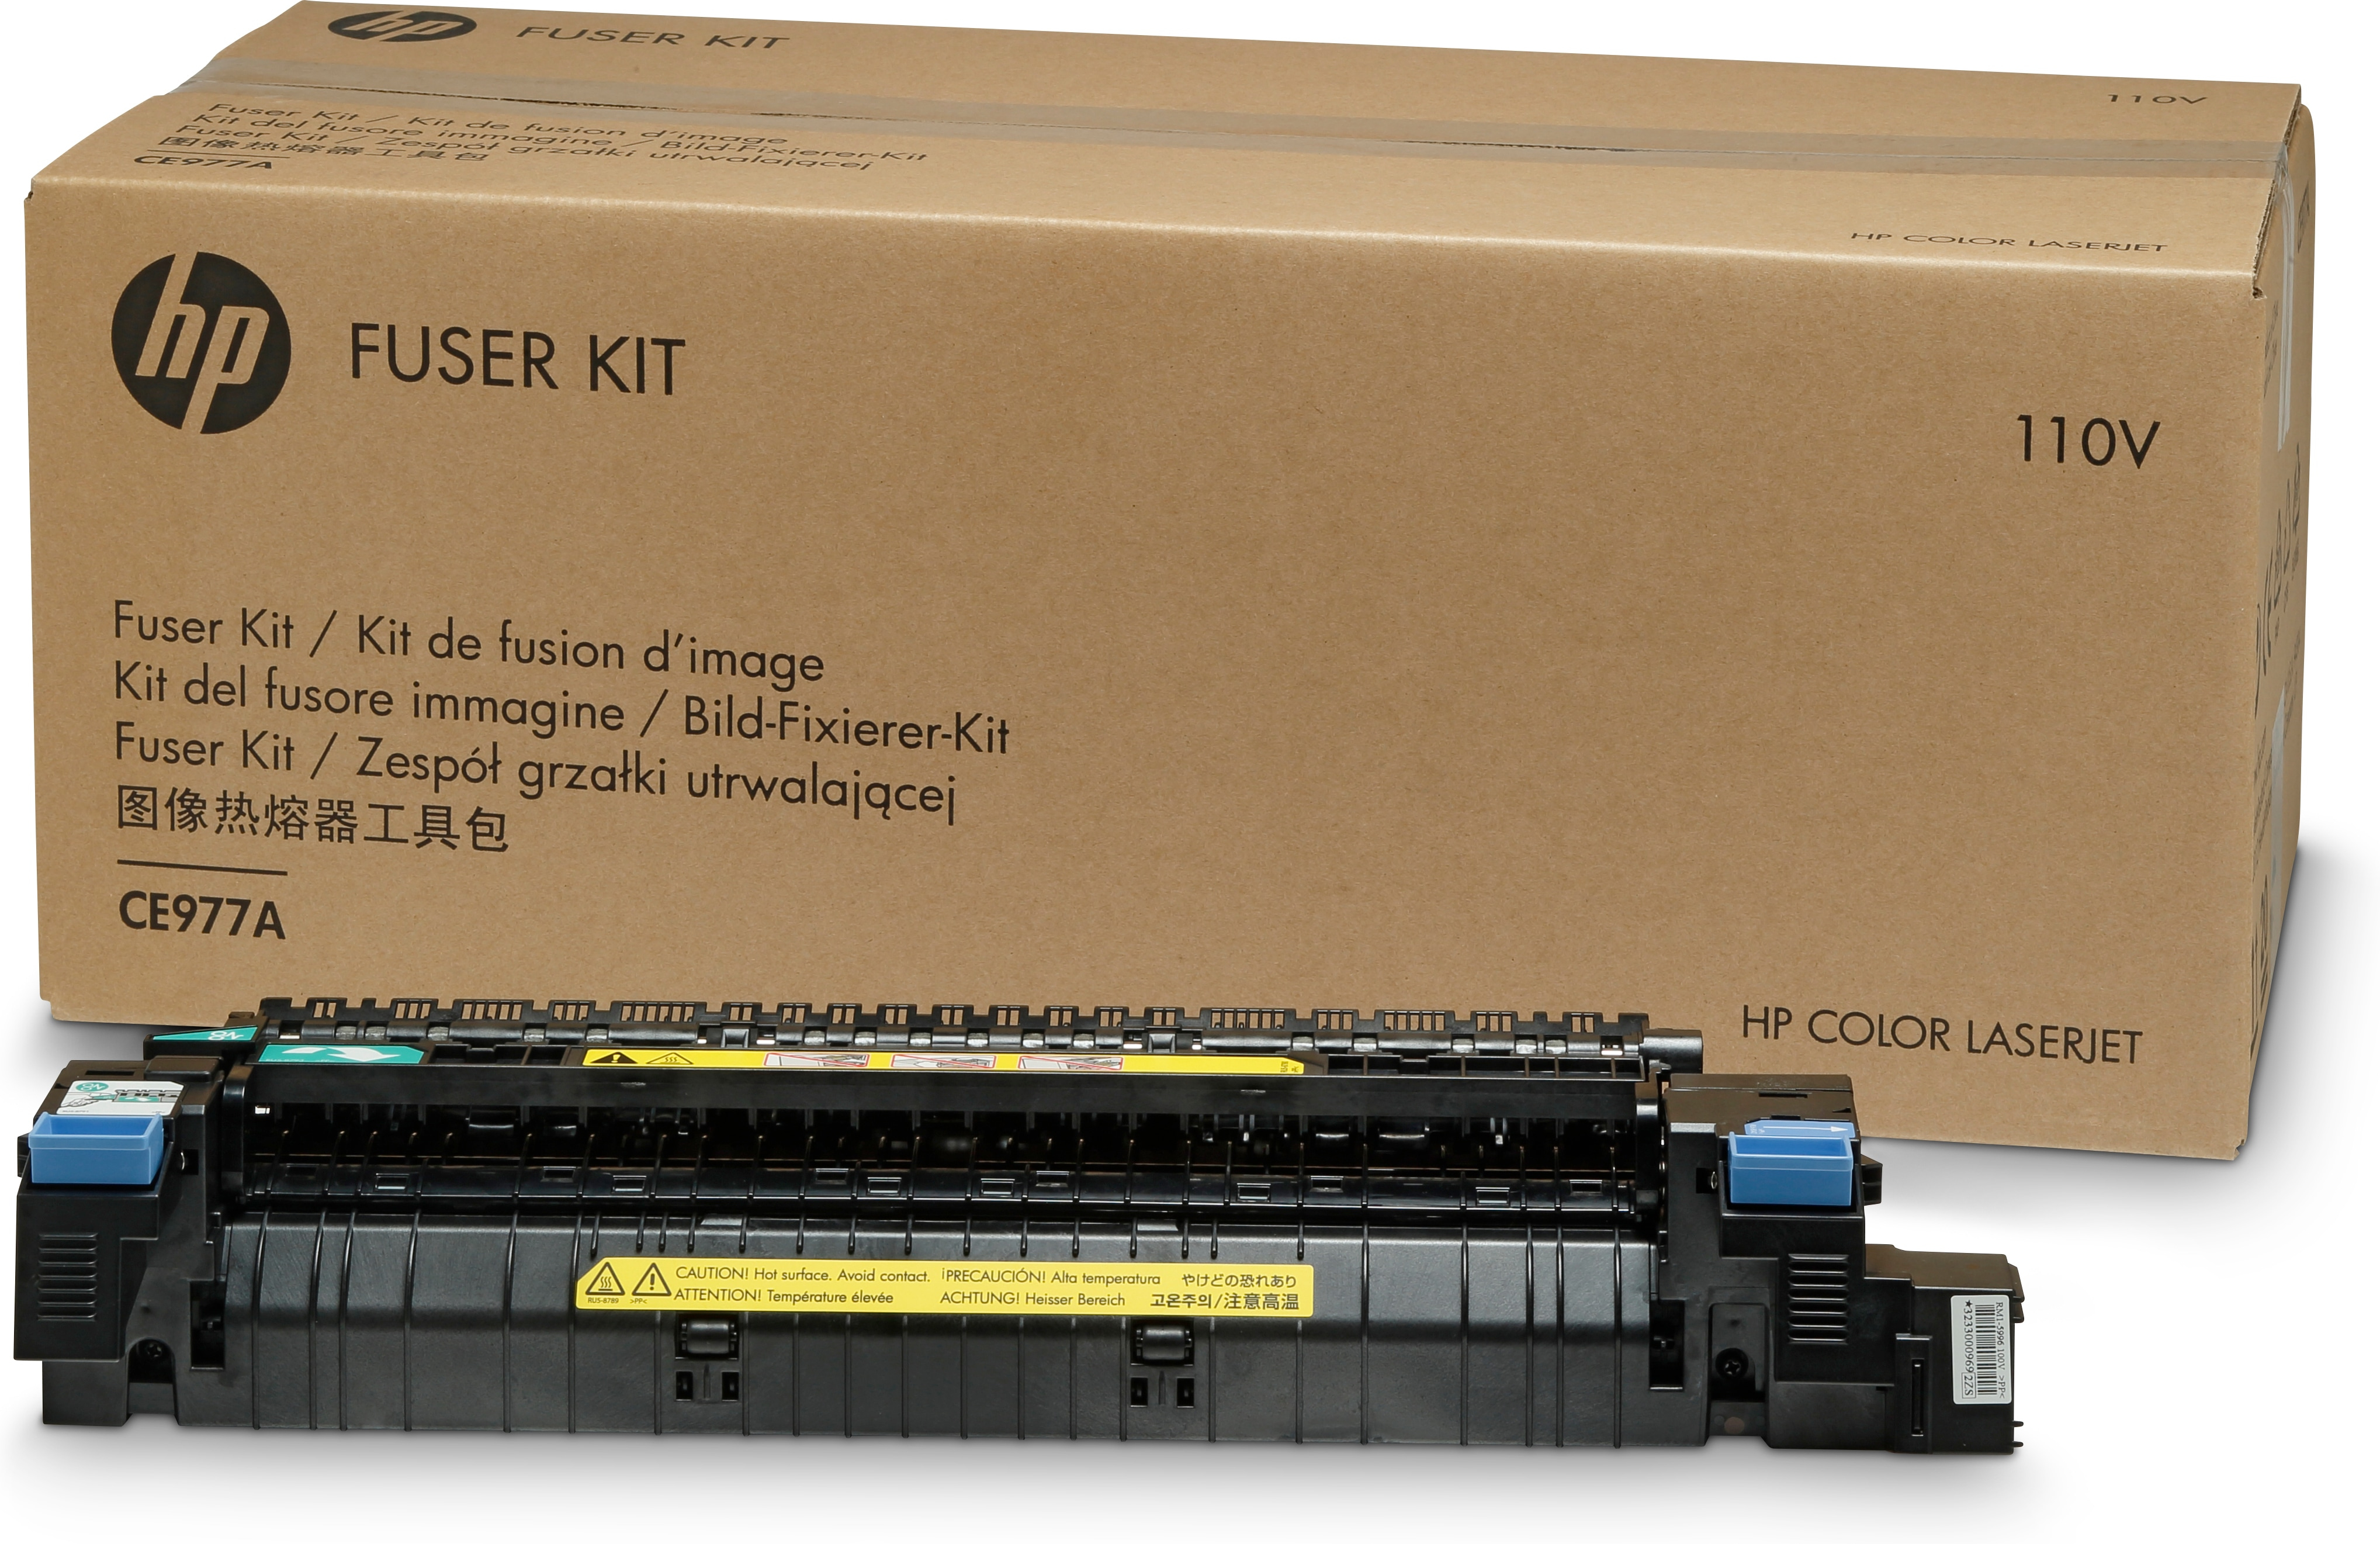 HP  (220 V) - Kit für Fixiereinheit - für Color LaserJet Enterprise CP5525dn